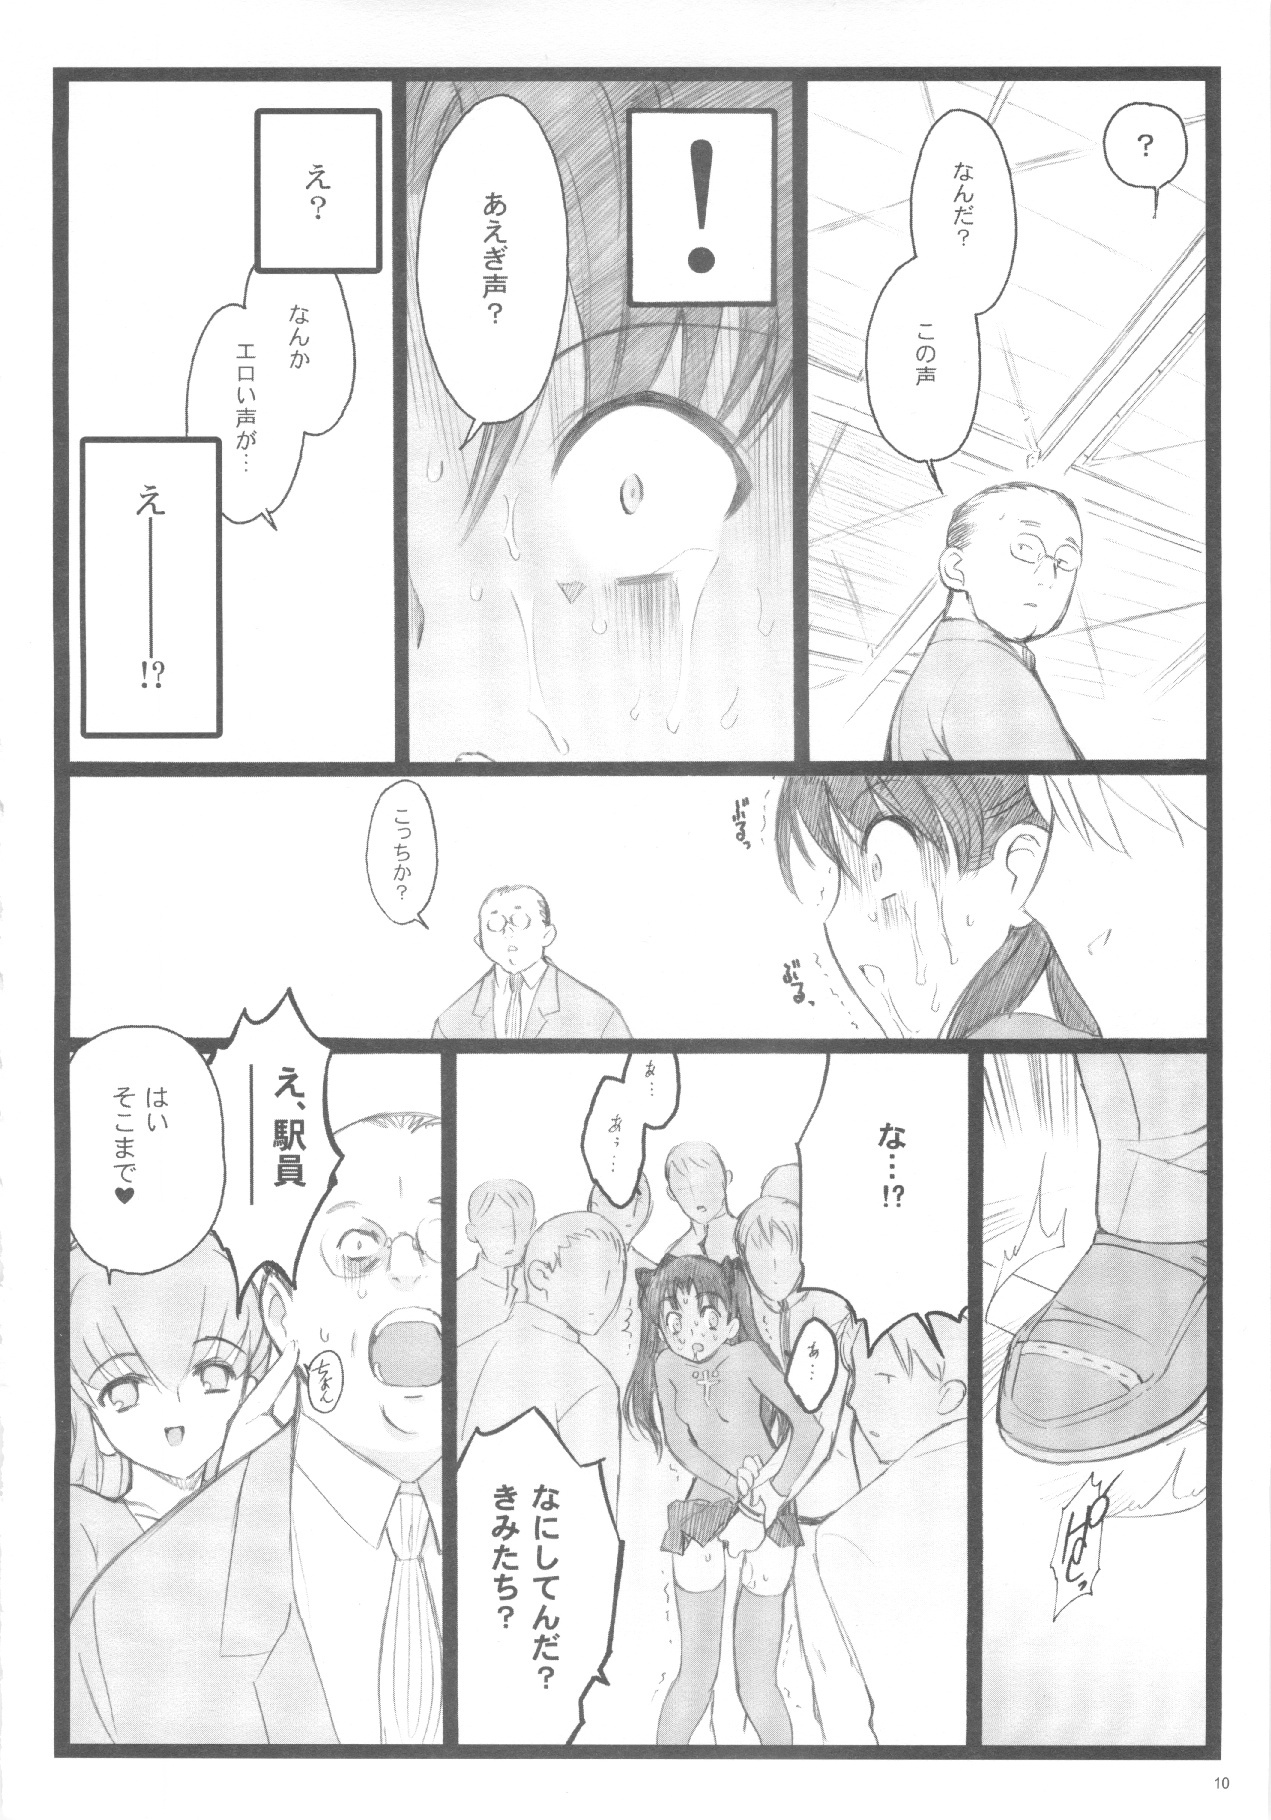 (C71) [Keumaya (Inoue Junichi)] Walpurugisnacht 3 / Walpurgis no Yoru 3 (Fate/stay night) page 9 full